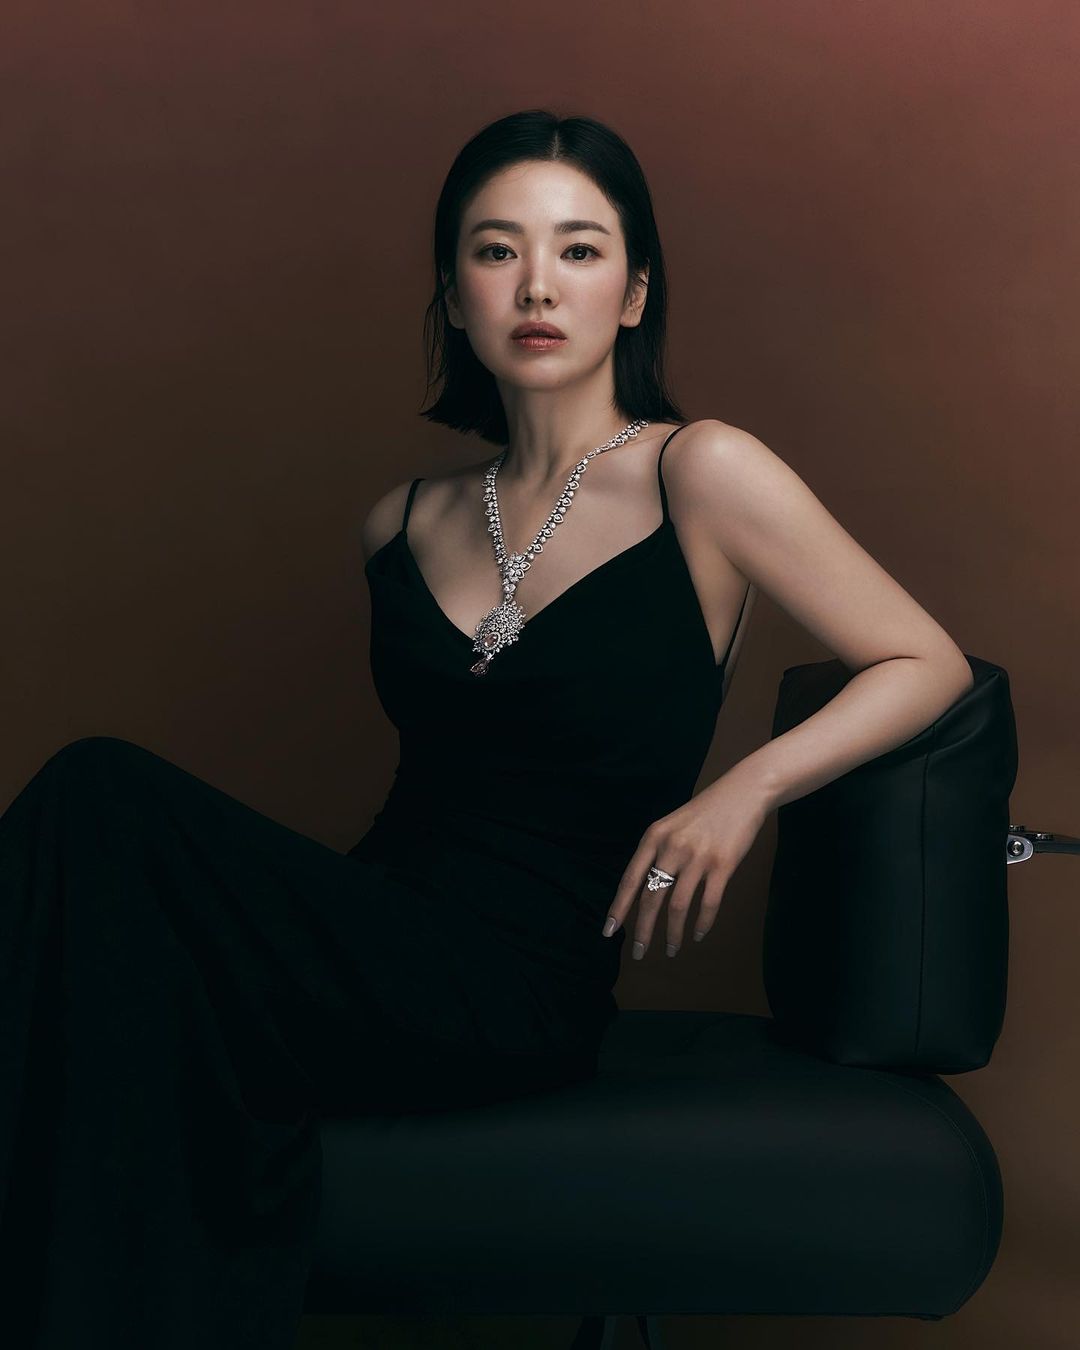 Càng nhìn càng mê mẩn Song Hye Kyo: Đội vương miện quyền lực tựa nữ hoàng, khoe vòng 1 lấp ló gợi cảm phát hờn - Ảnh 4.